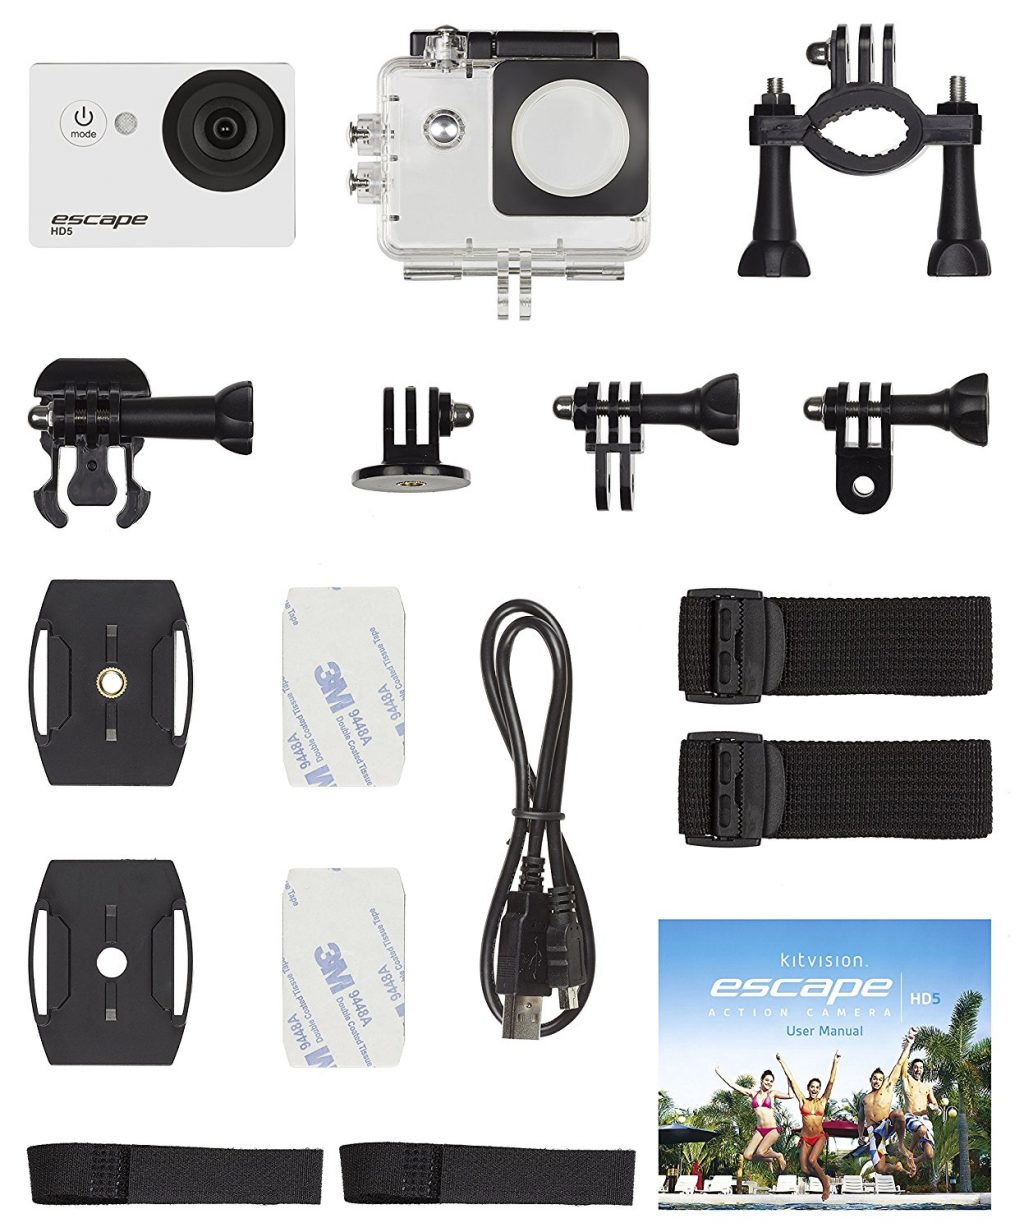 Decouverte Camera Kitvision Escape Hd5 (10)